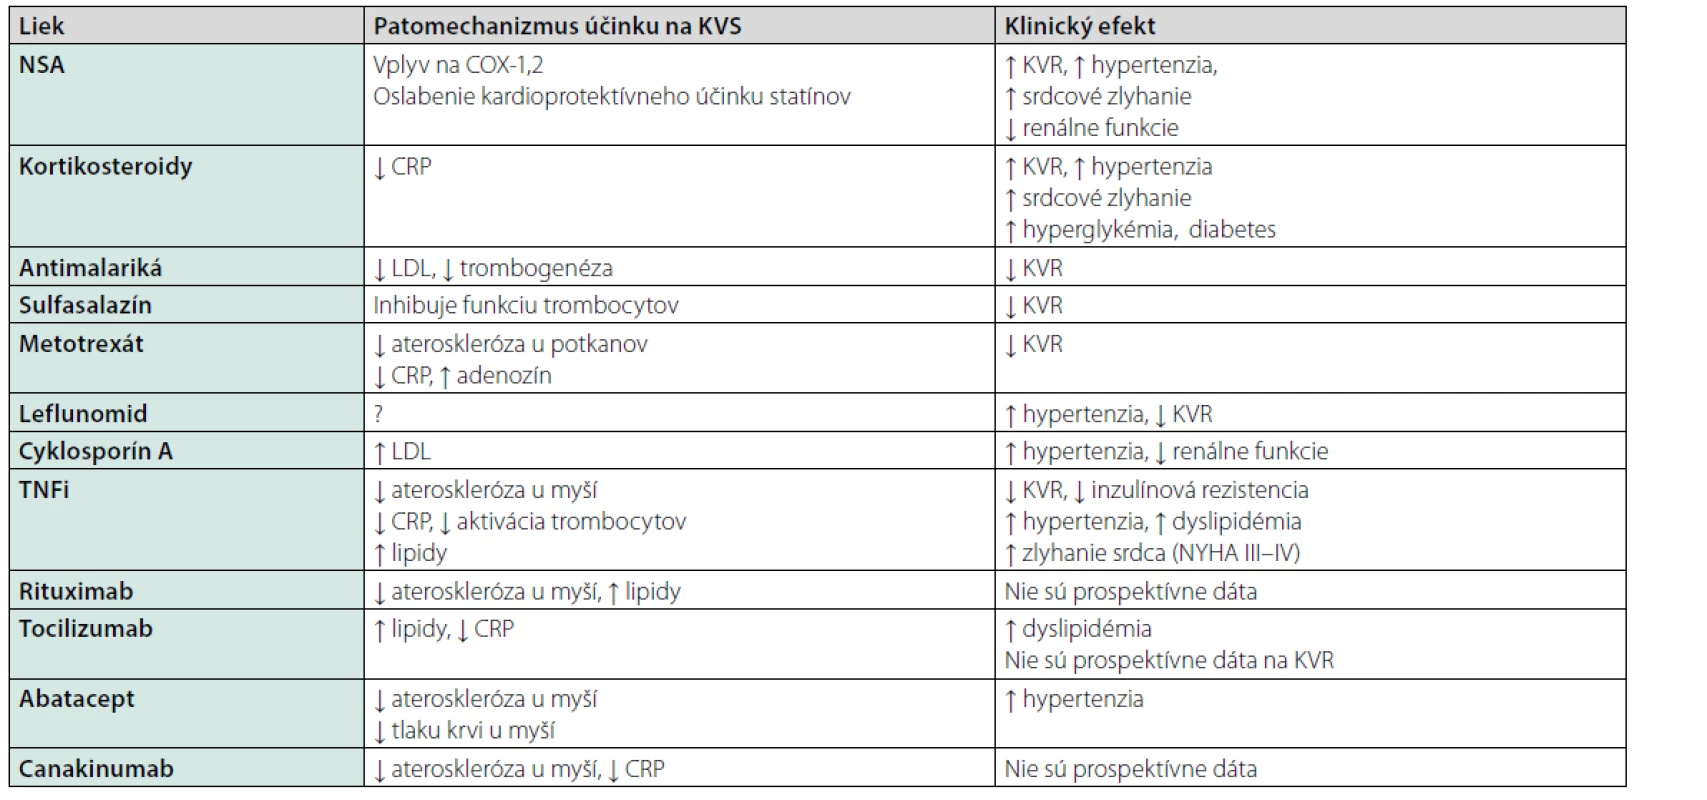 Účinok vybraných liekov na kardiovaskulárny systém (KVS). Upravené podľa (20)